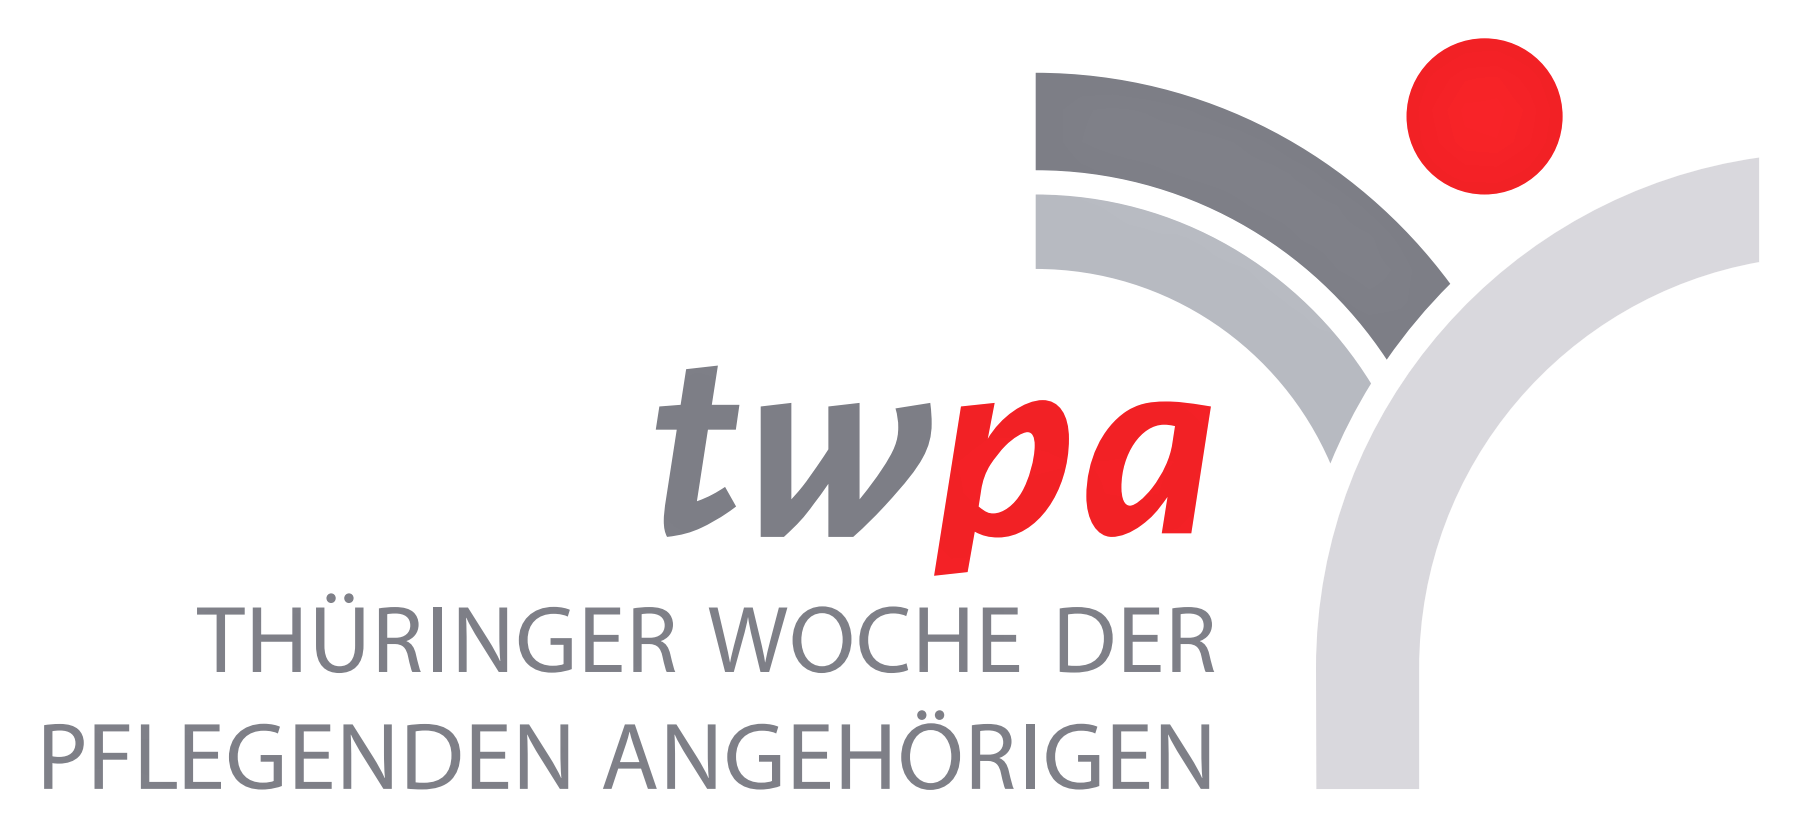 twpa: Thüringer Woche der pflegenden Angehörigen (2022)